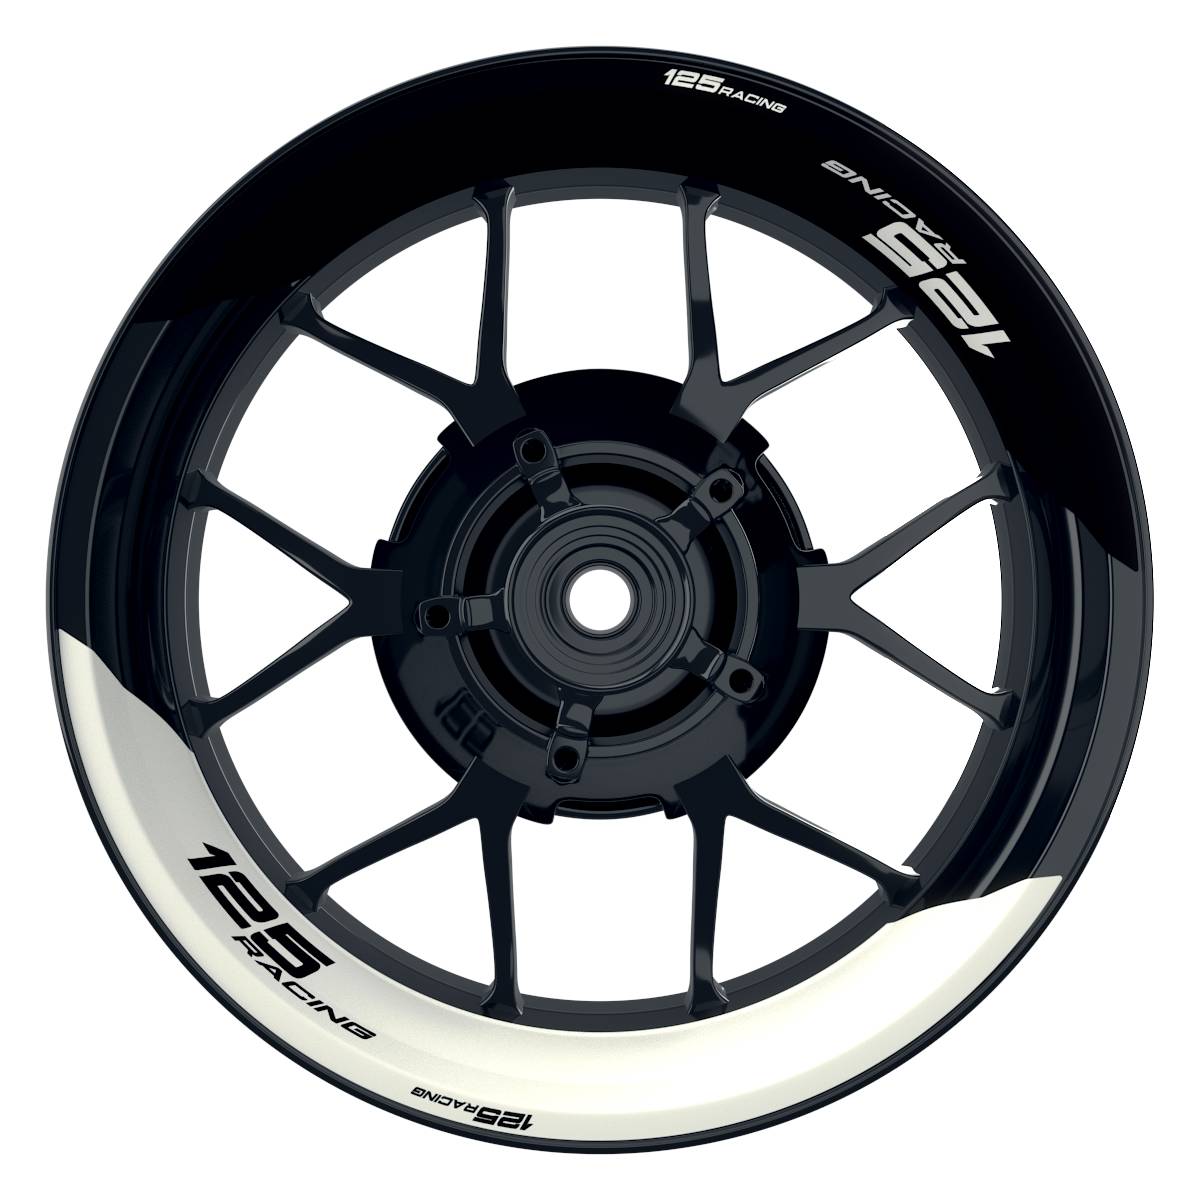 KTM Racing 125 halb halb schwarz weiss Frontansicht